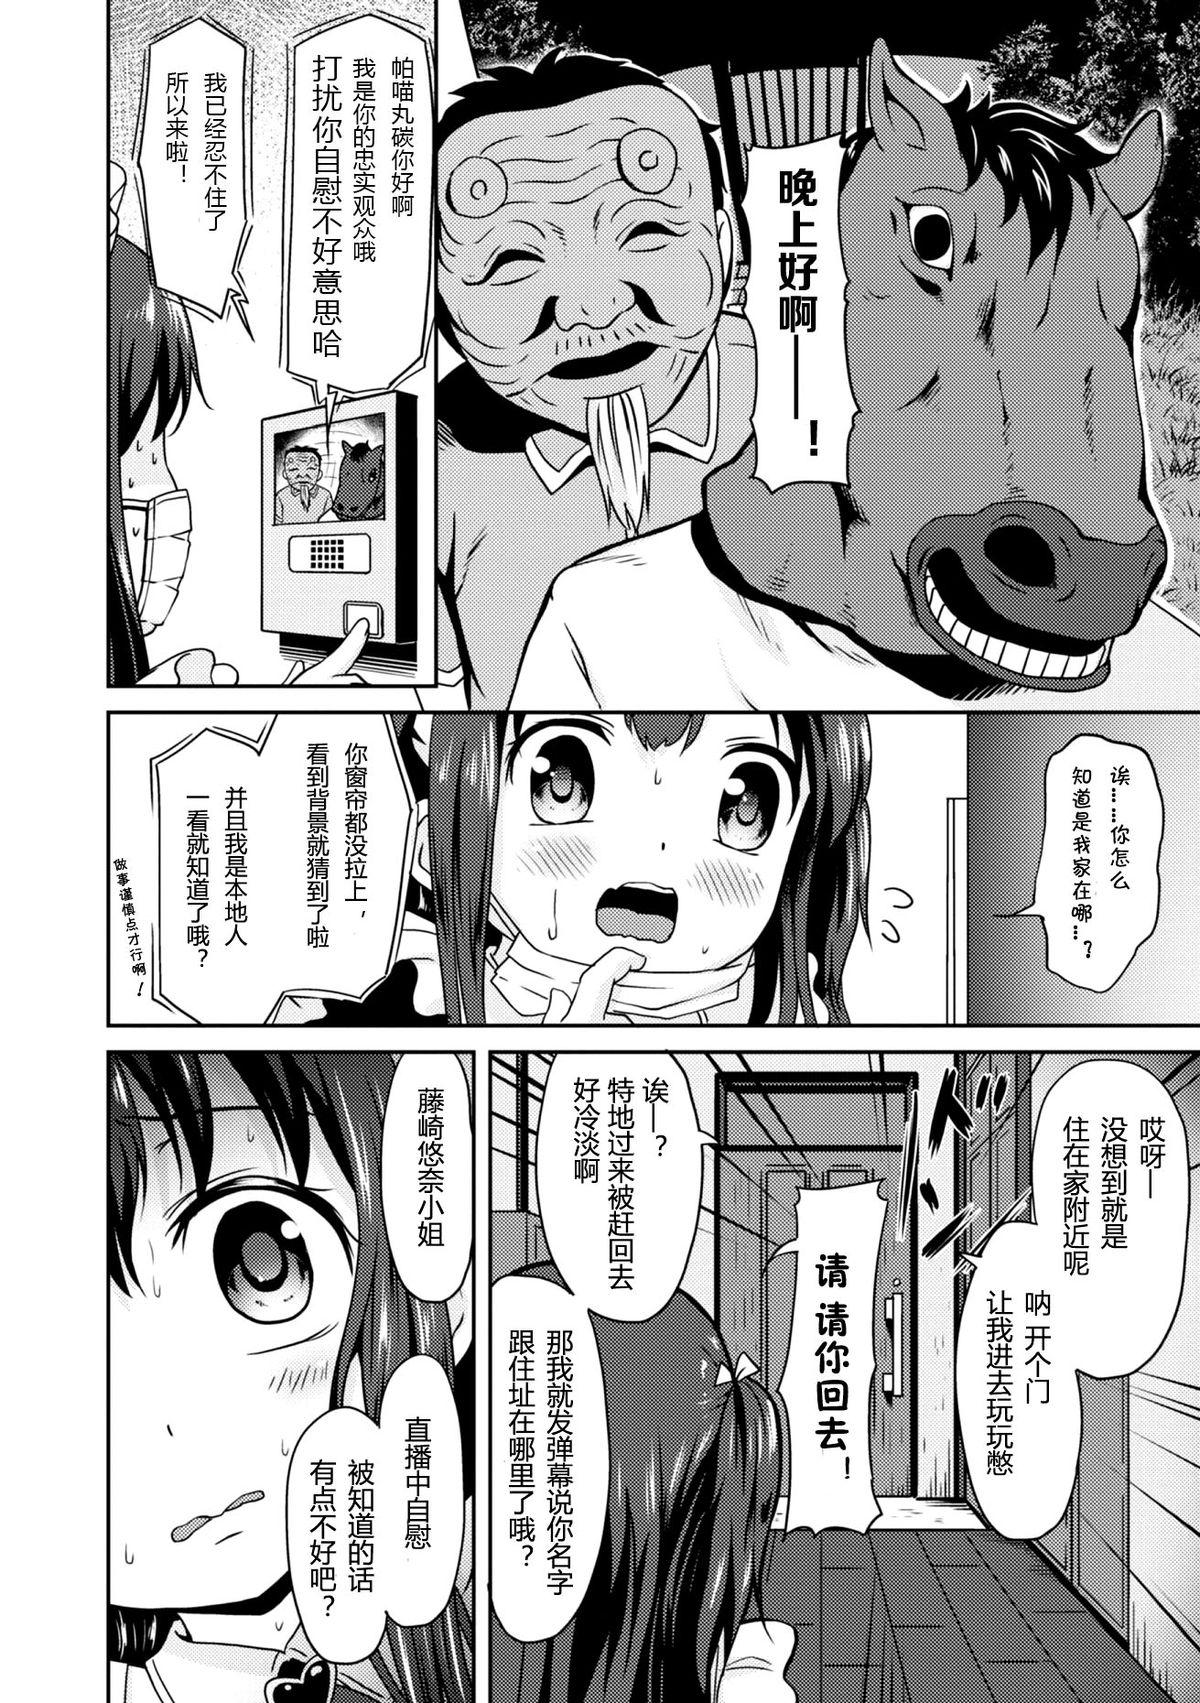 Omegle "Jigoku no" Panyumaru Seihaishin - Maboroshi no Guest Kai "ReaTotsu" Anal Play - Page 6